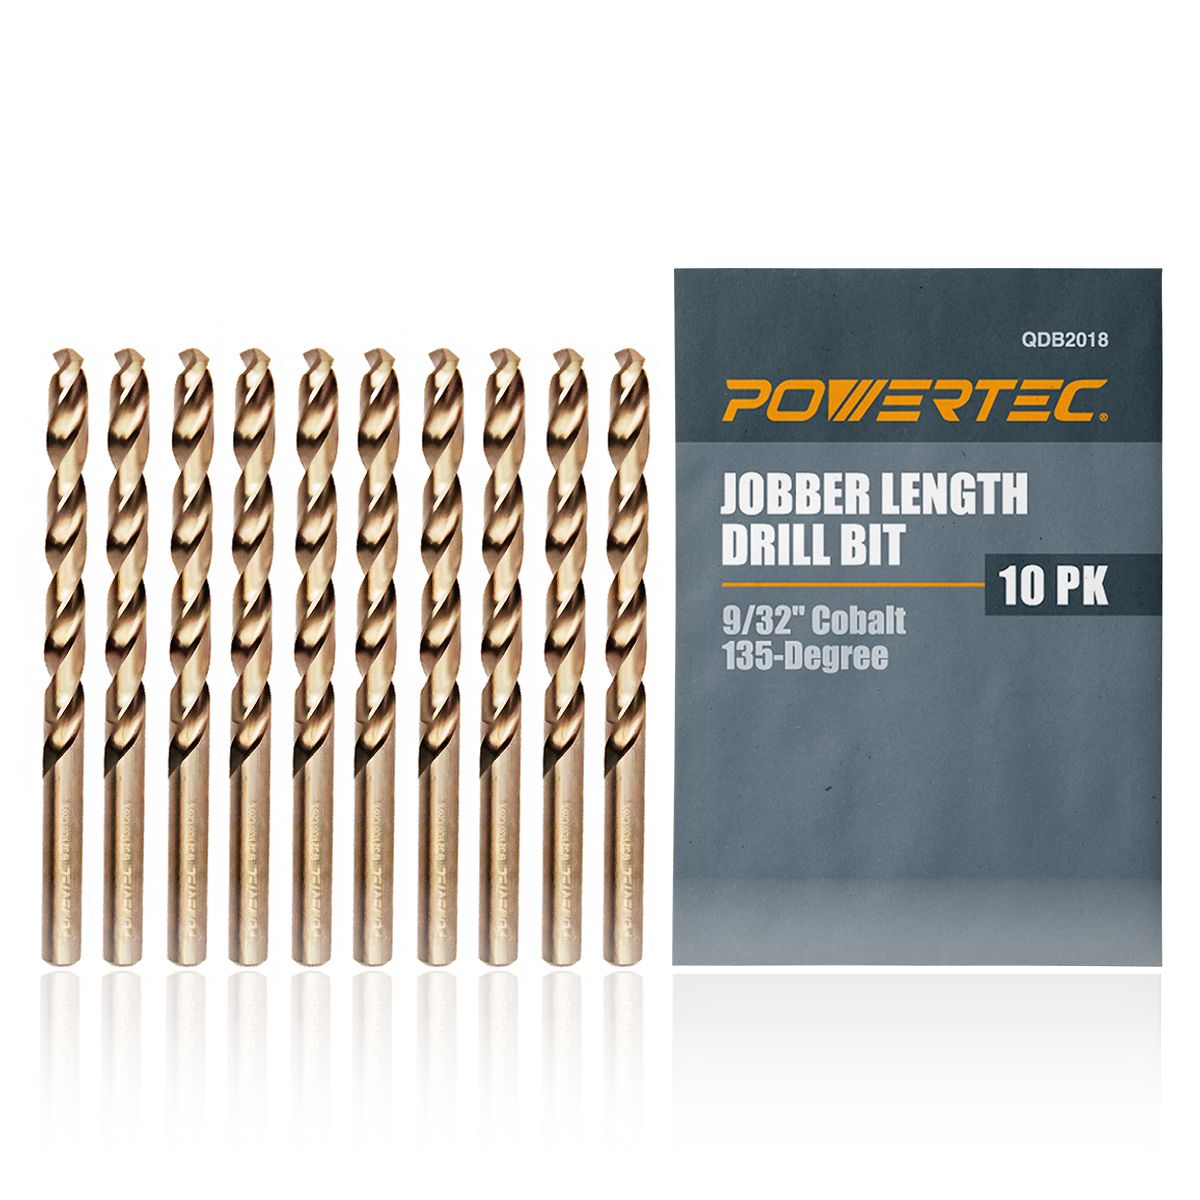 POWERTEC 10PK Cobalt Drill Bit 9/32-Inch Inch | 135 Degree Drill Bit Set (QDB2018) - image 1 of 7